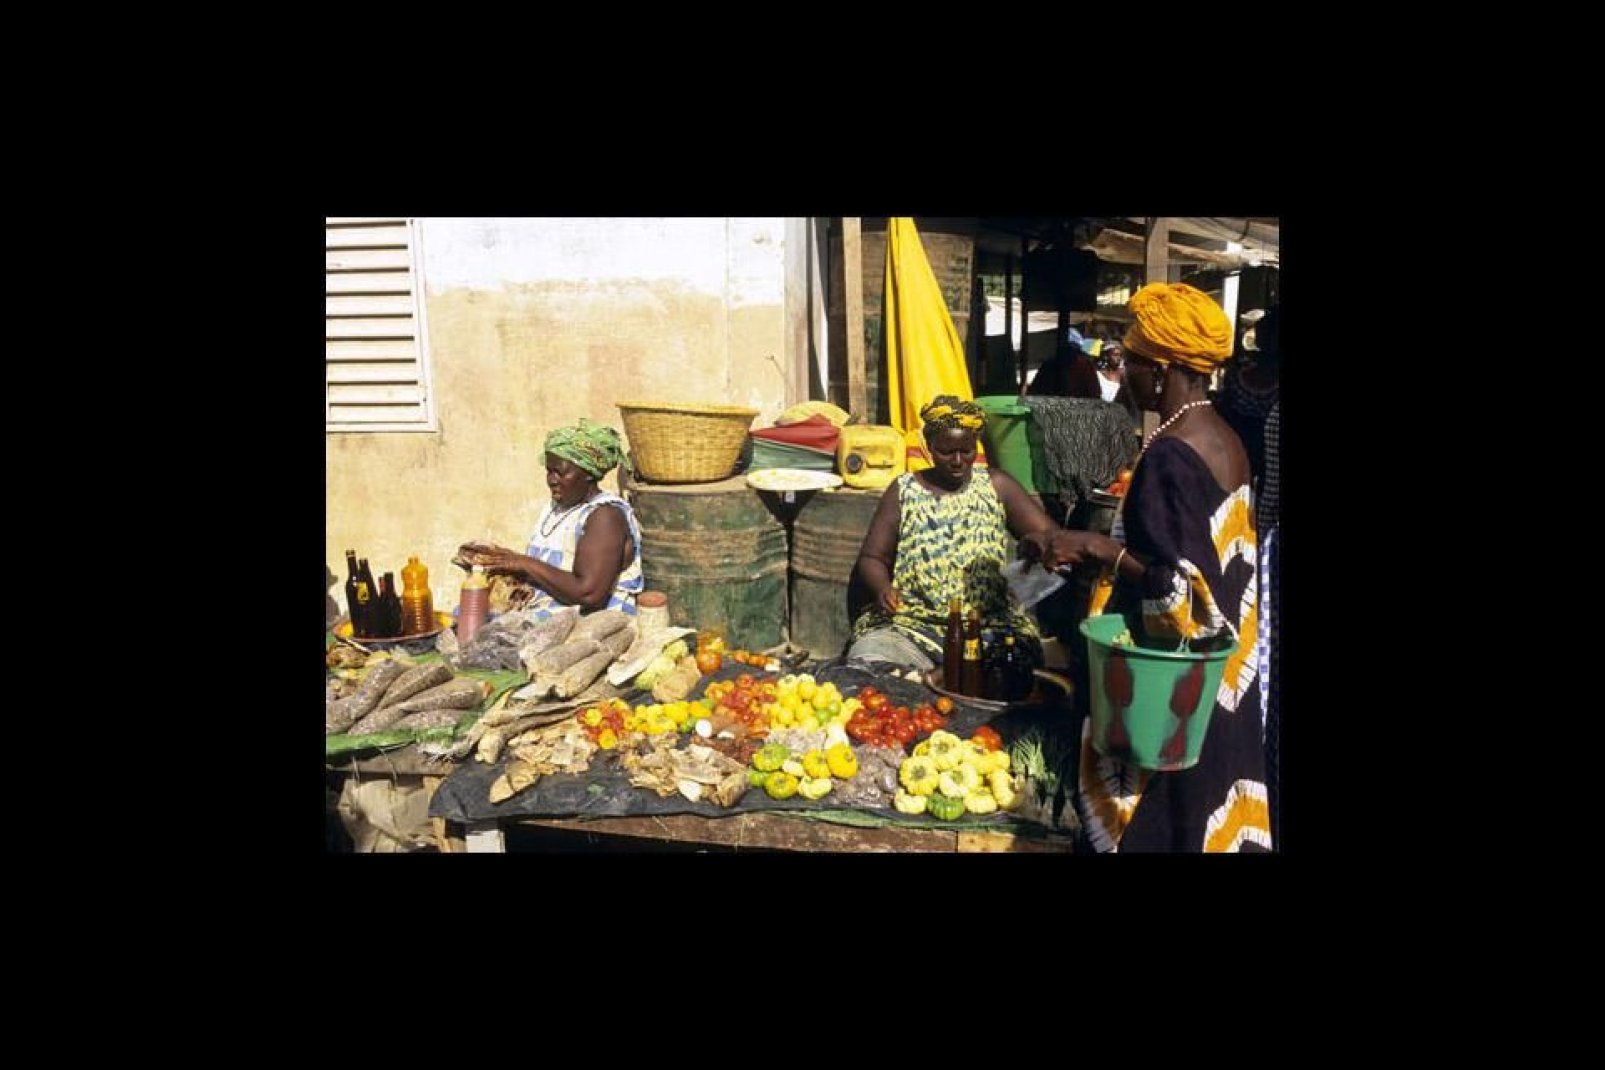 El mercado de Ziguinchor propone toda una variedad de frutas y verduras, así como gamas secas, miel o aceite de palma